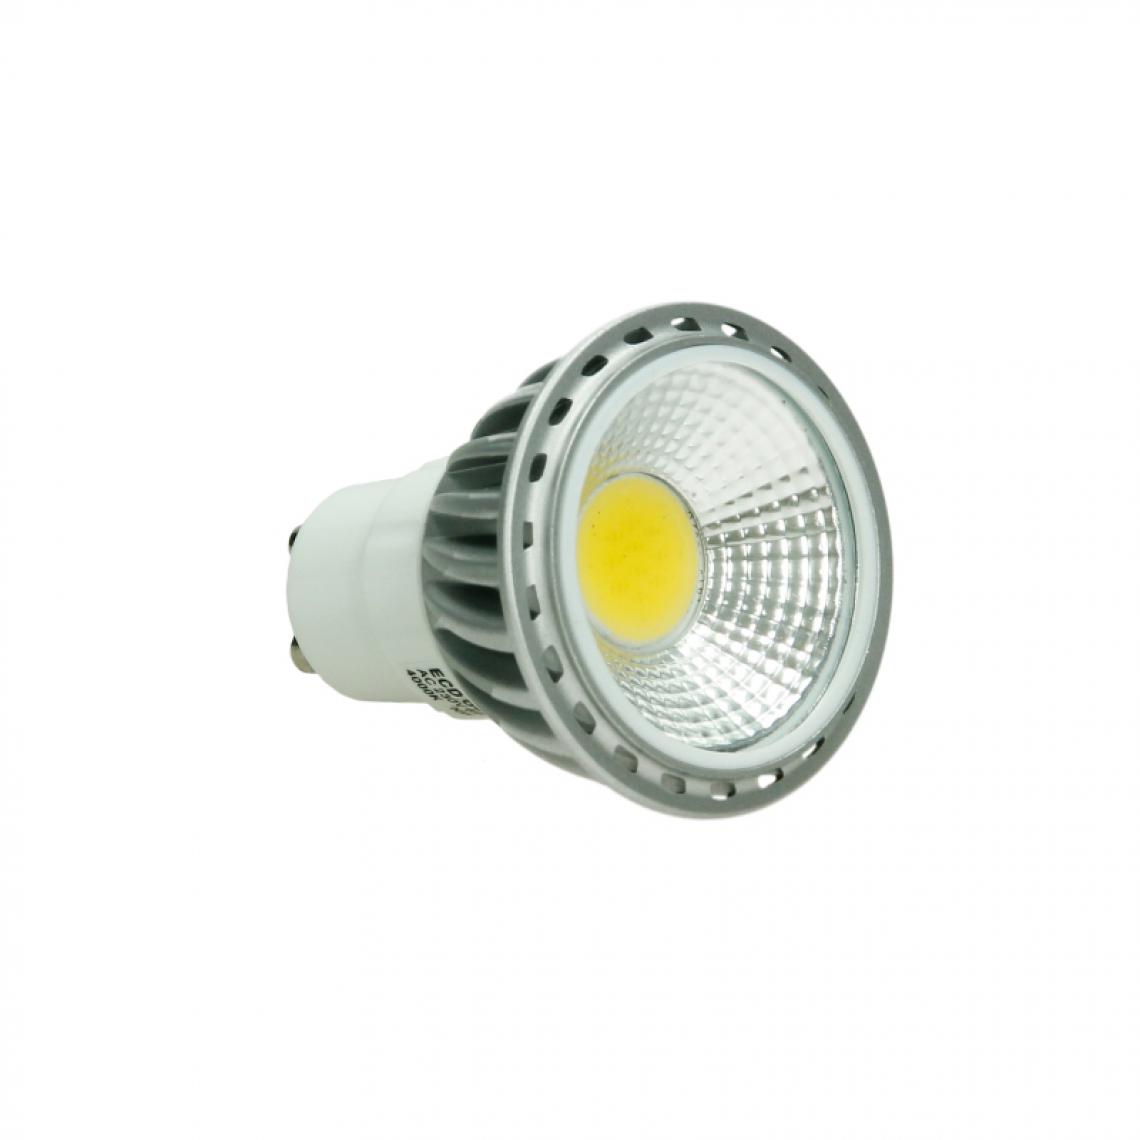 Ecd Germany - ECD Germany 20 x LED Spot Bulb GU10 COB 6W - 30W - Spot LED Plafond - 220-240V - 321 Lumens - Blanc Chaud - 3000K - Dimmable - - Angle de Faisceau de 60º- Remplace une Lampe Halogène de 30W - Lampe connectée